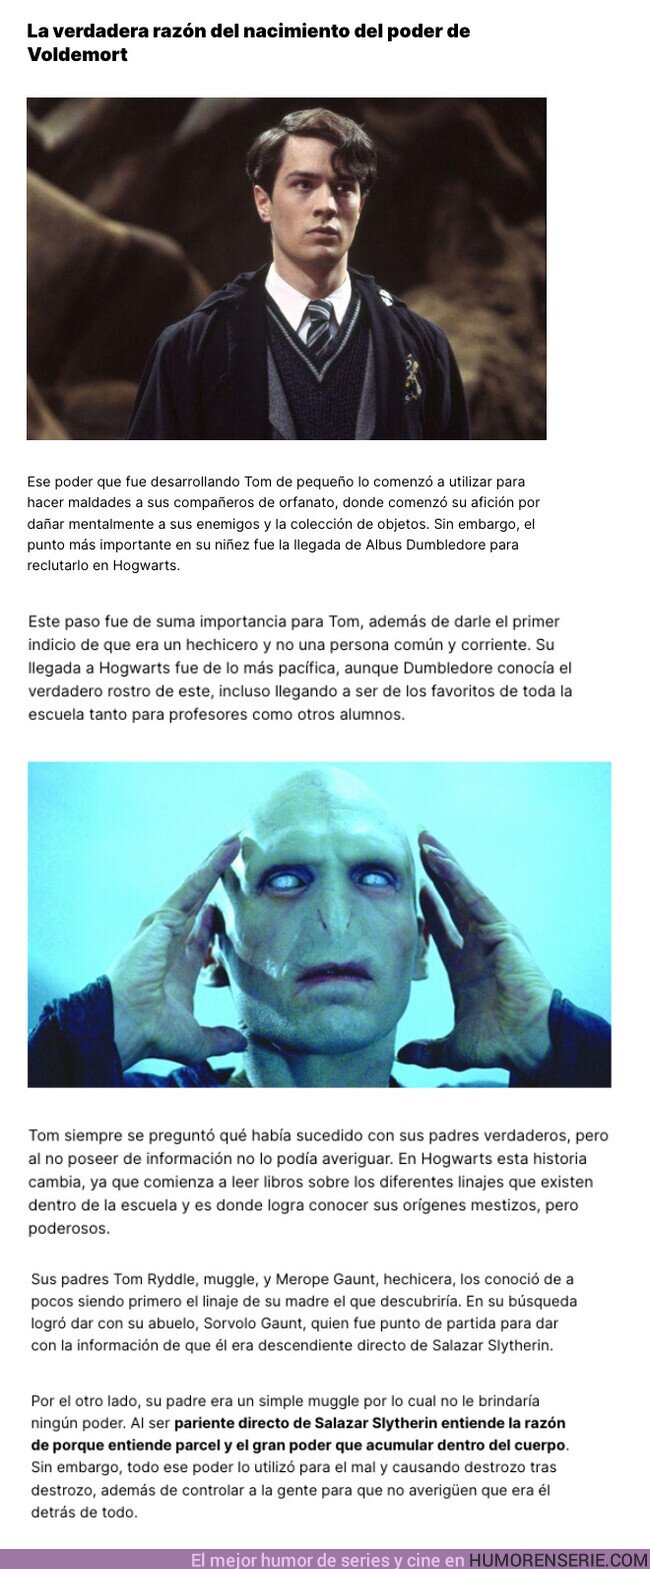 125188 - GALERÍA: ¿Conoces el origen del poder de Voldemort?